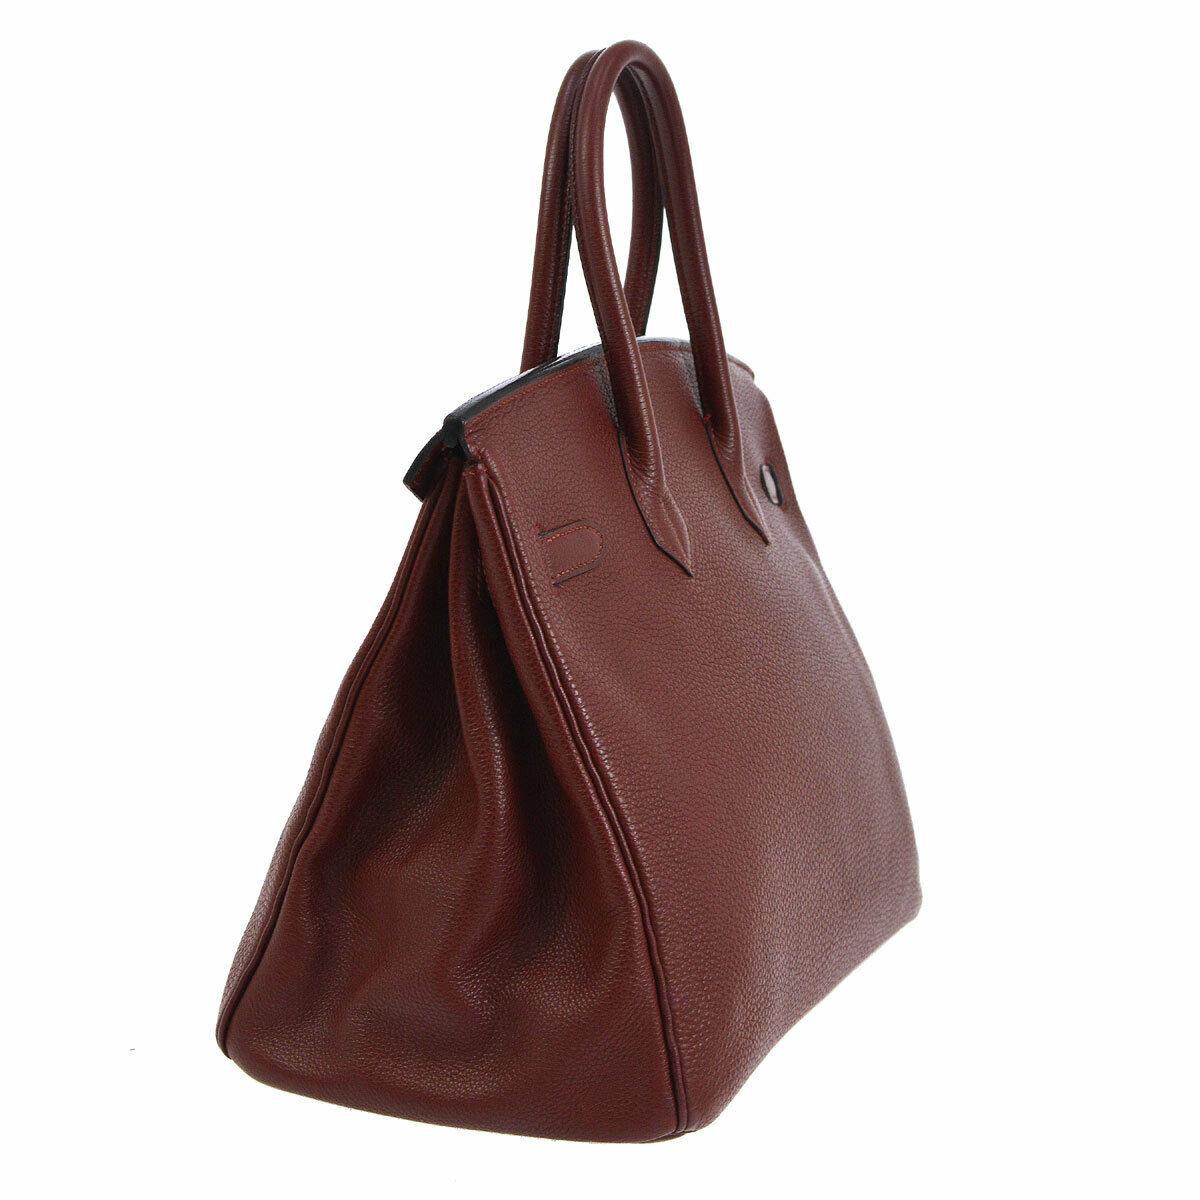 Brown Hermes Birkin 35 Burgundy Leather Top Carryall Handle Satchel Travel Tote Bag